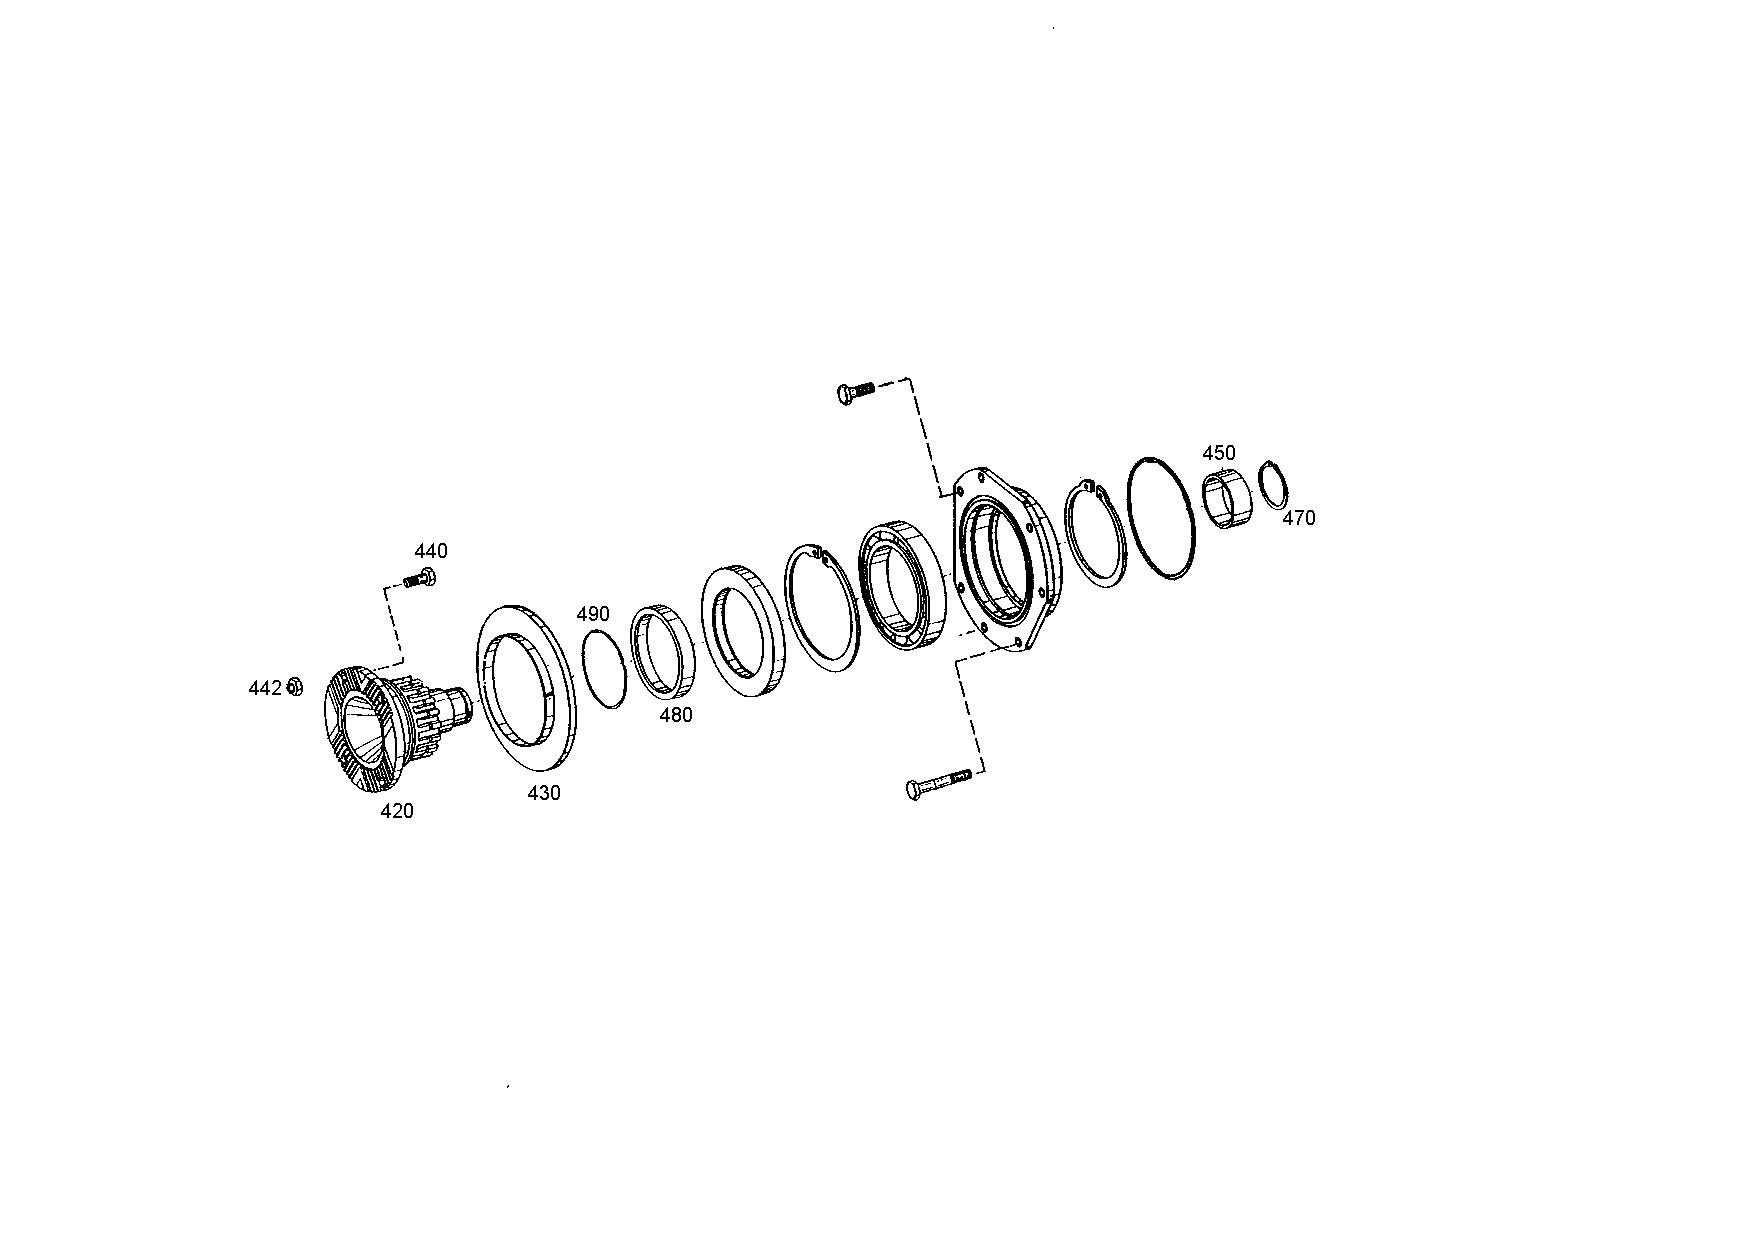 drawing for S.N.V.I.-C.V.I. 7701013689 - FILTER INSERT (figure 1)